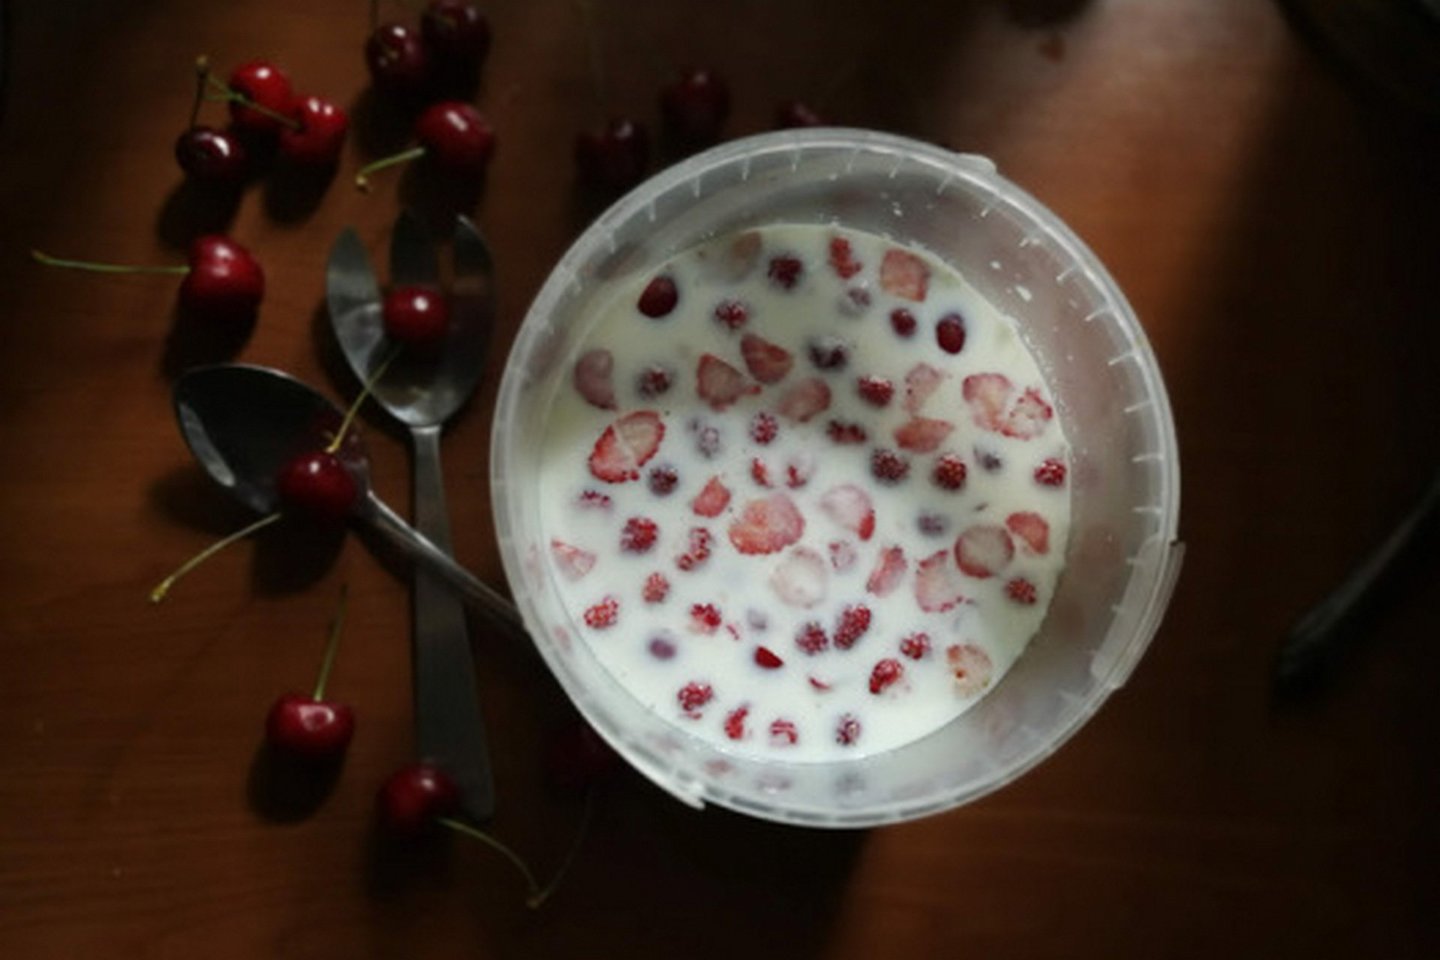  Natūralus naminis jogurtas.<br> Nuotr. iš „Kūmutės virtuvė“.